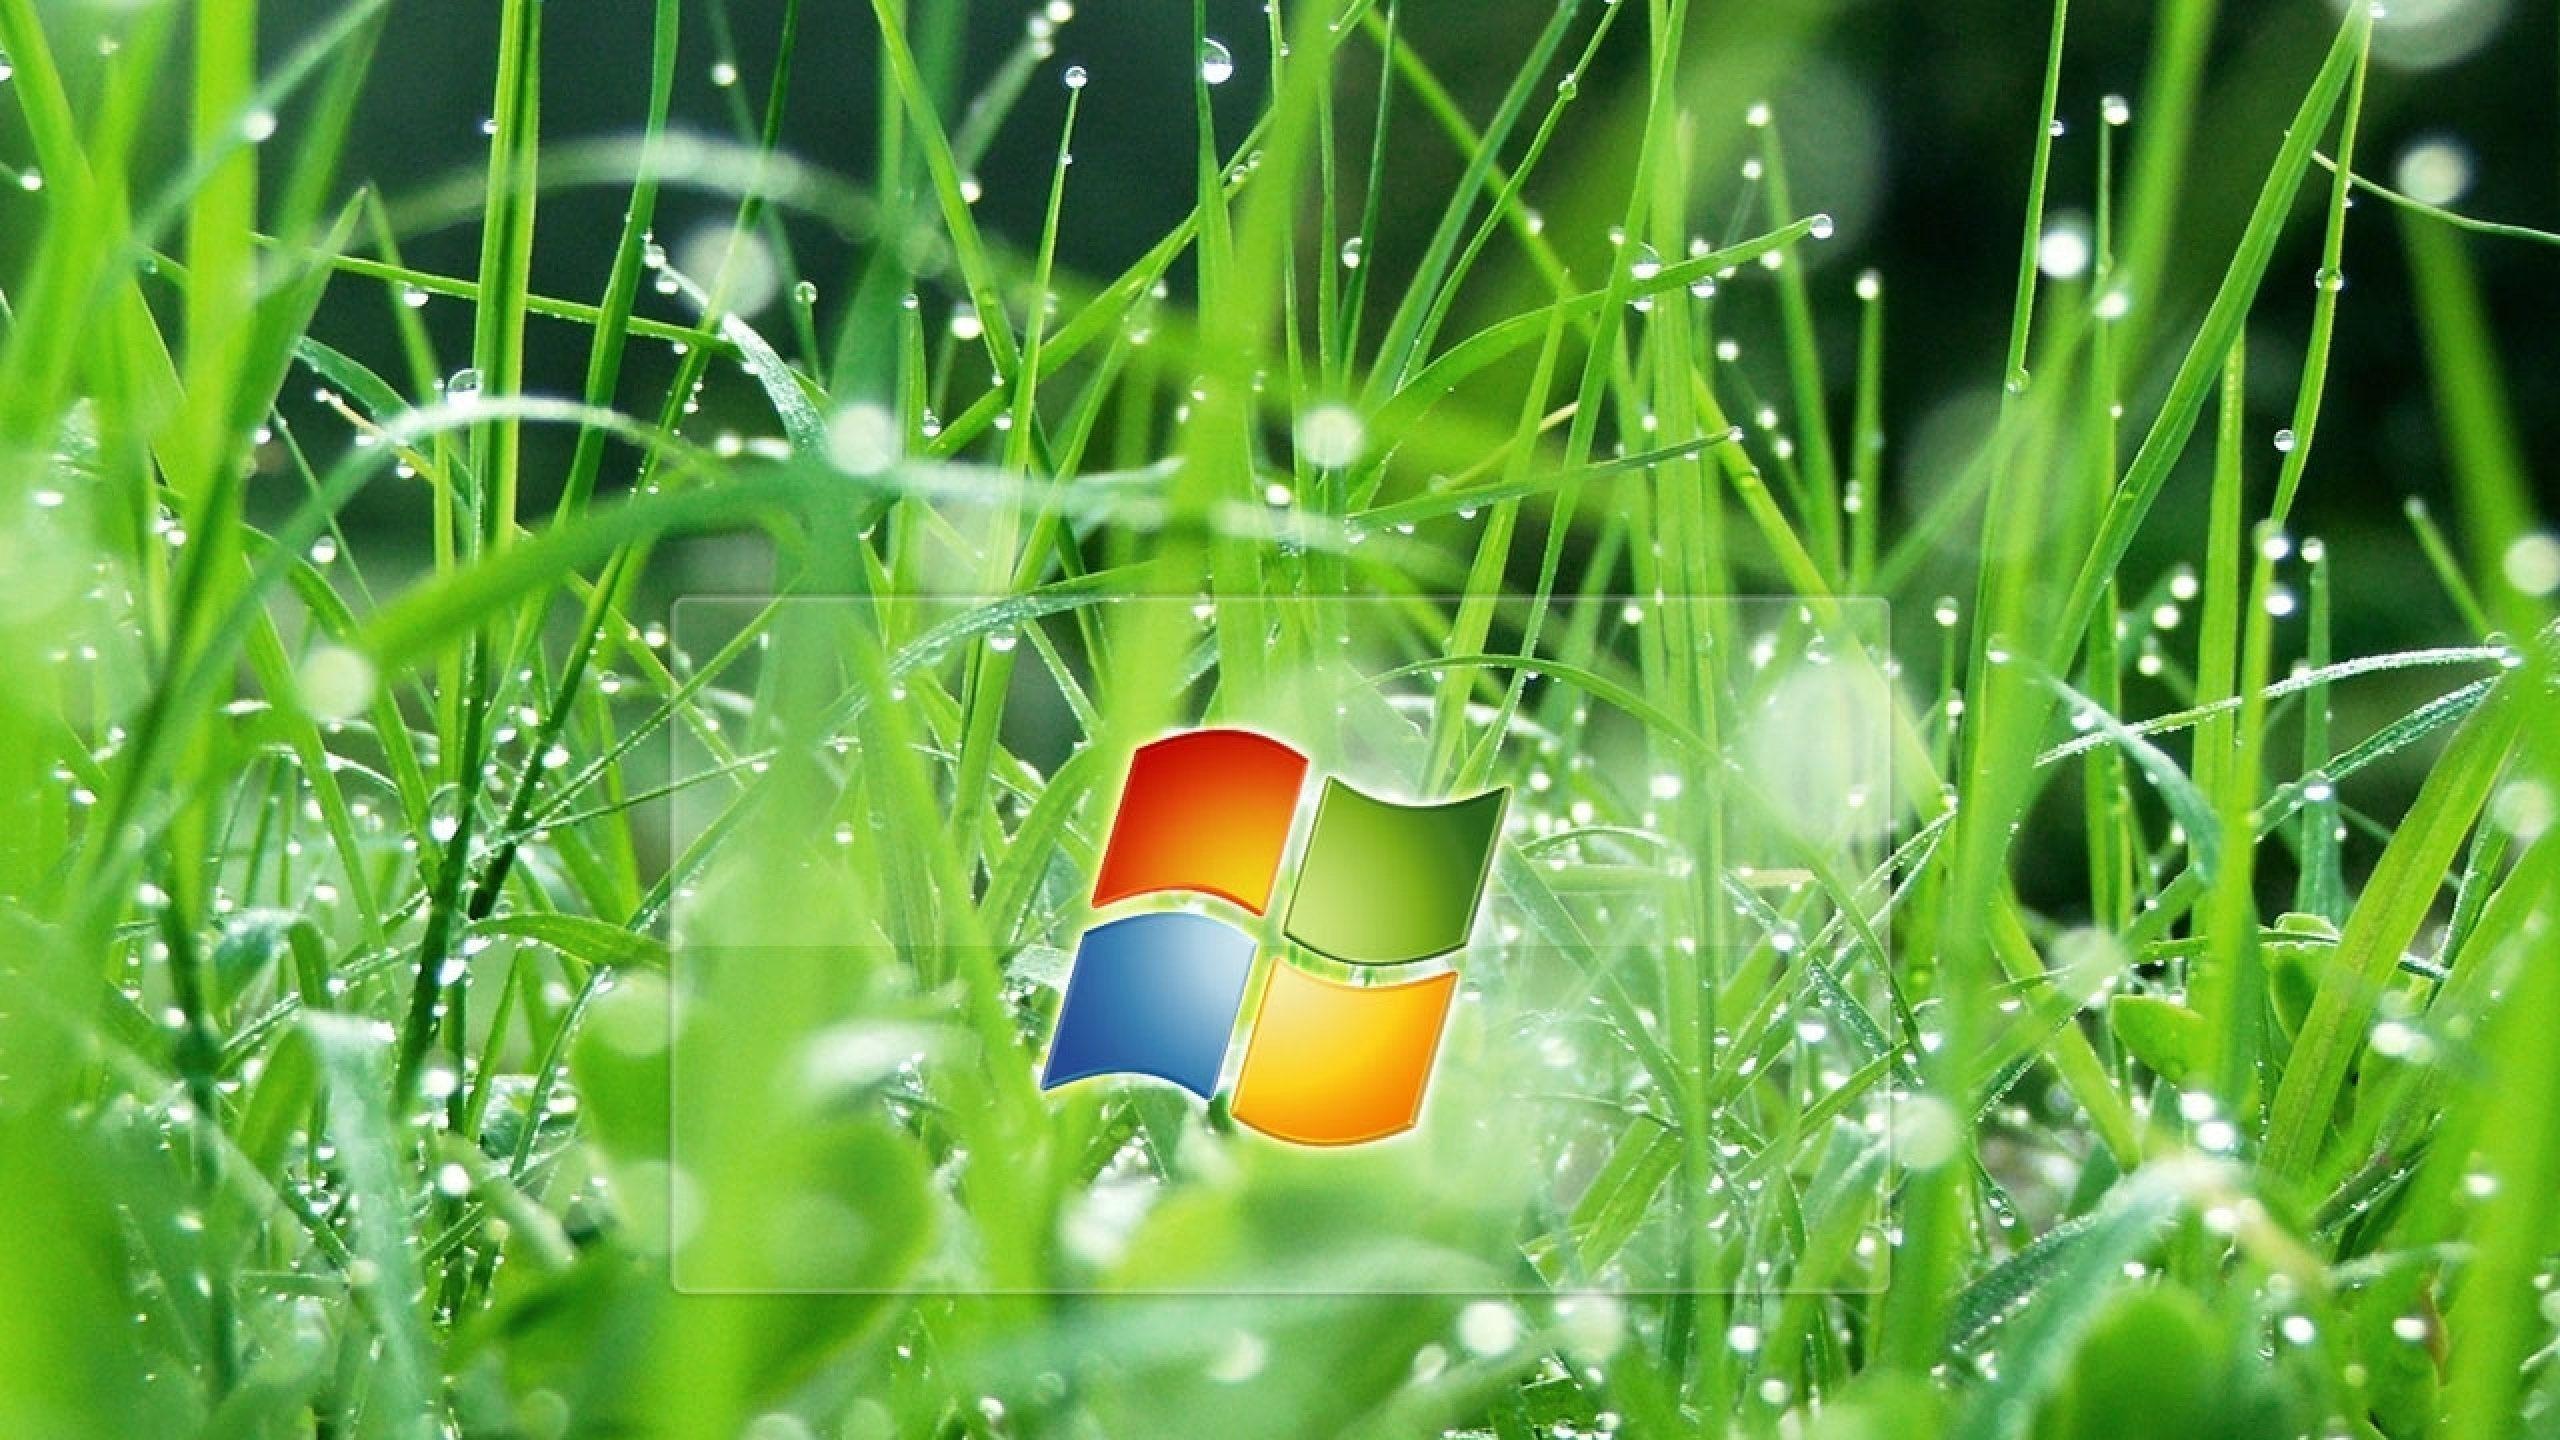 Microsoft Wallpaper Grass, wallpaper, Microsoft Wallpaper Grass HD